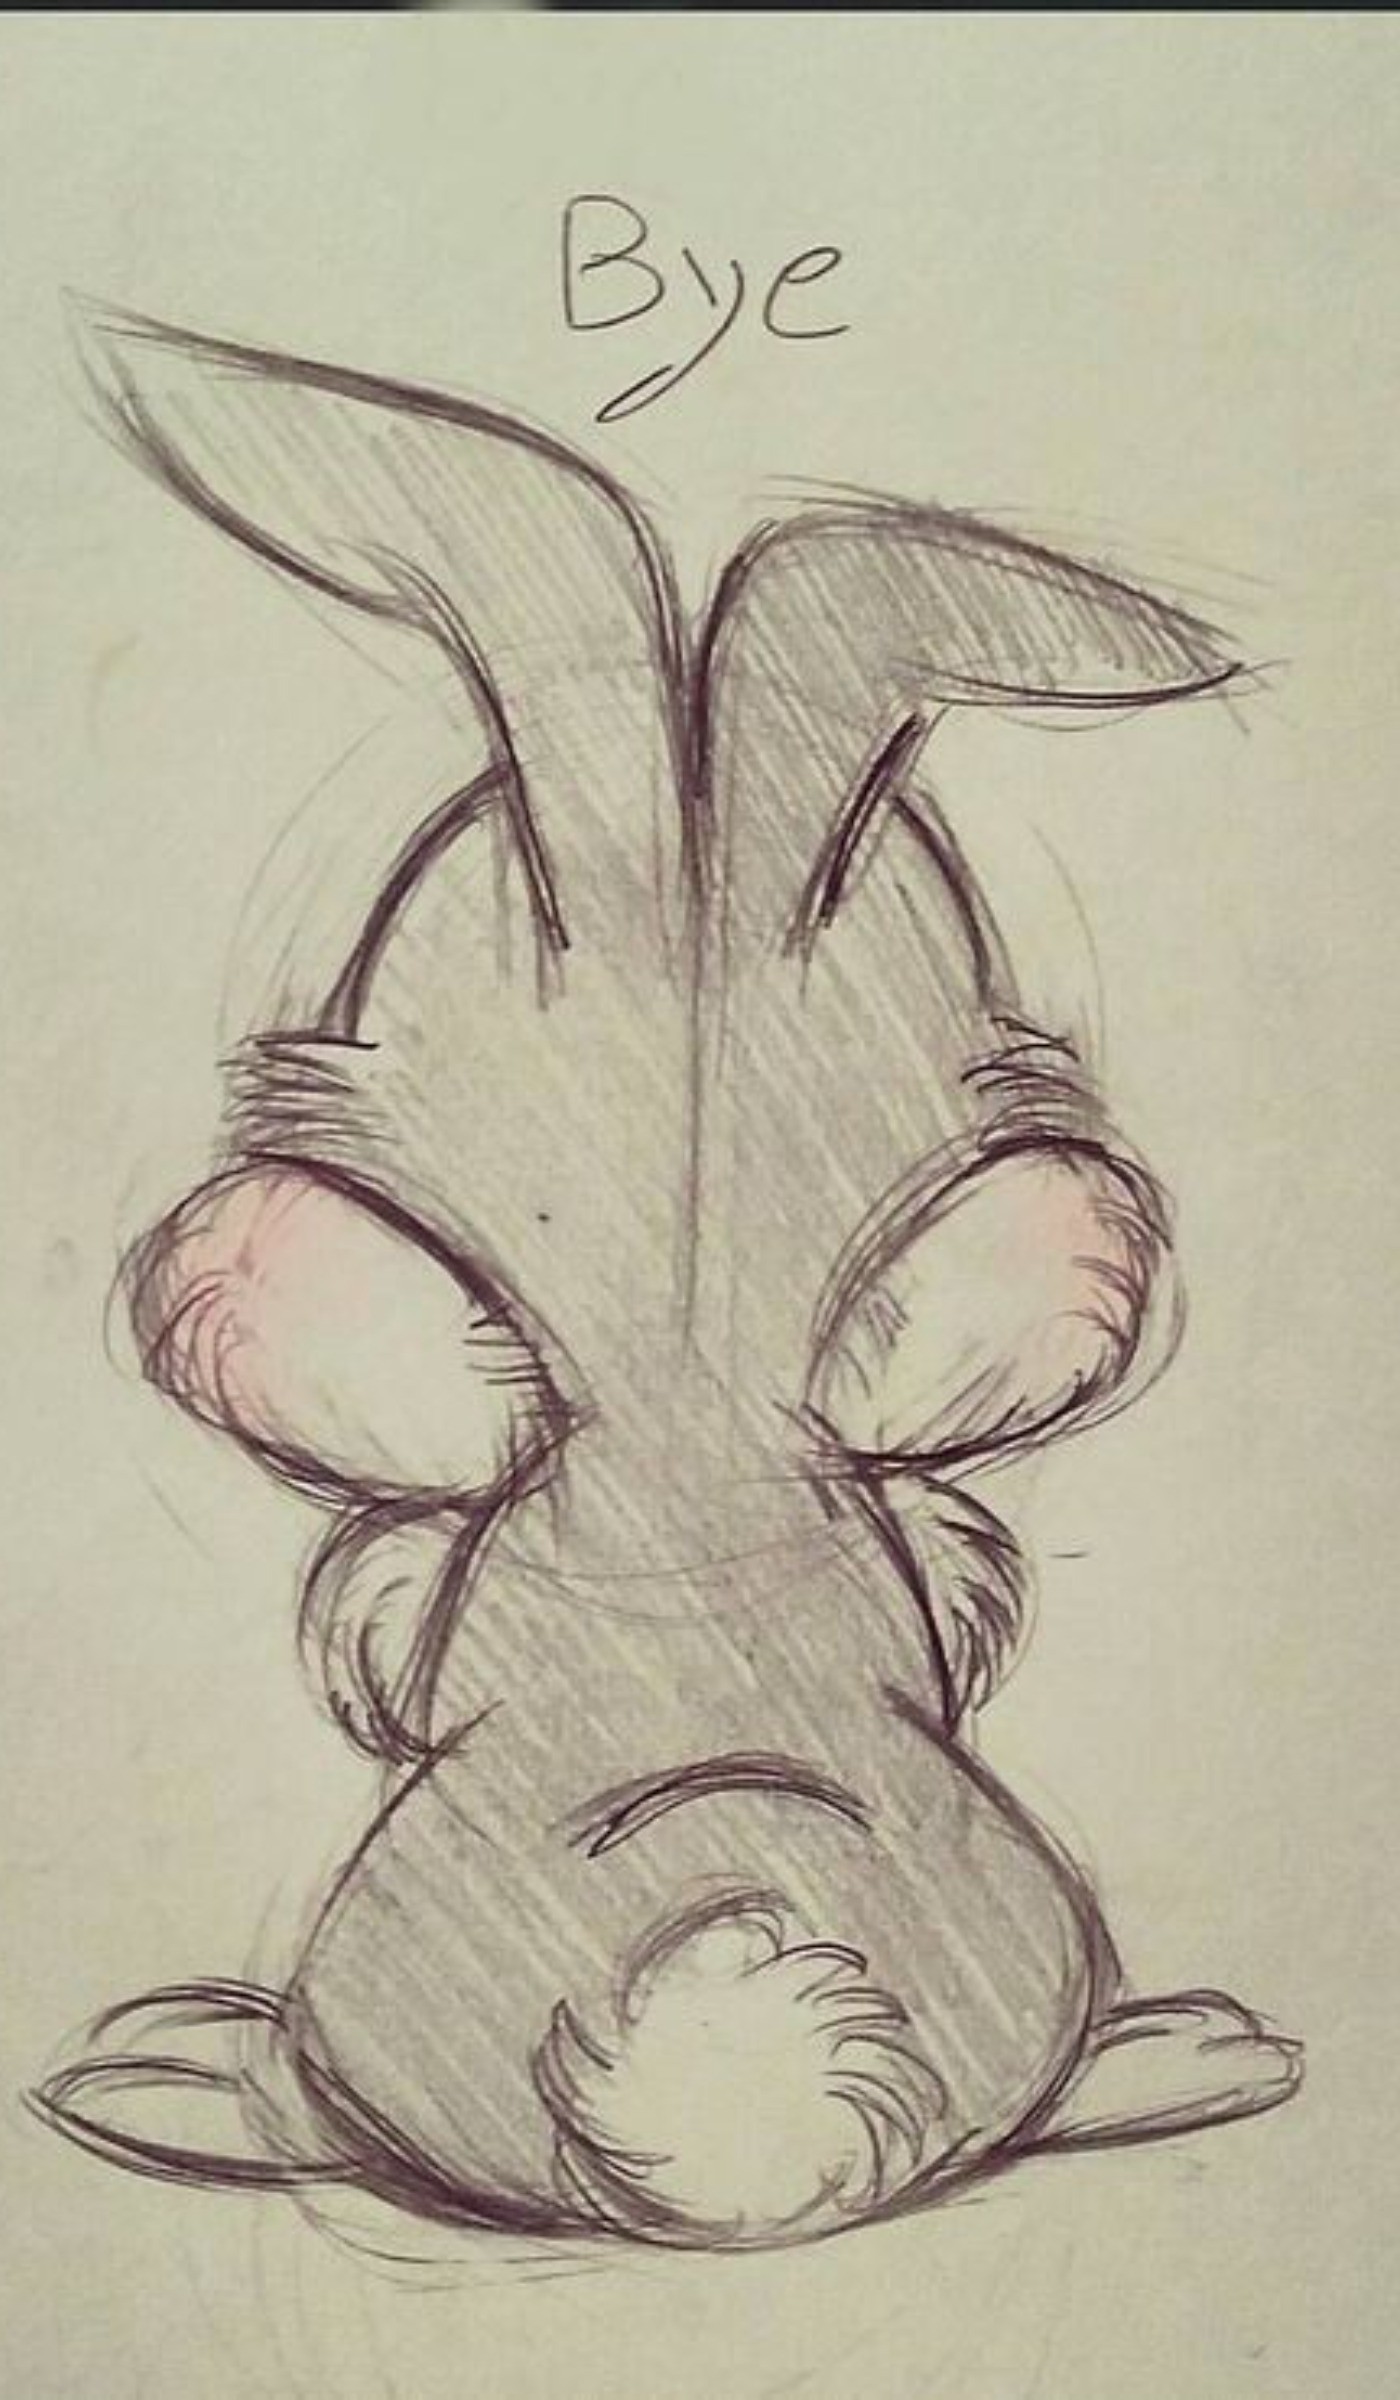 ایده برای طراحی/ نقاشی خرگوش کیوت